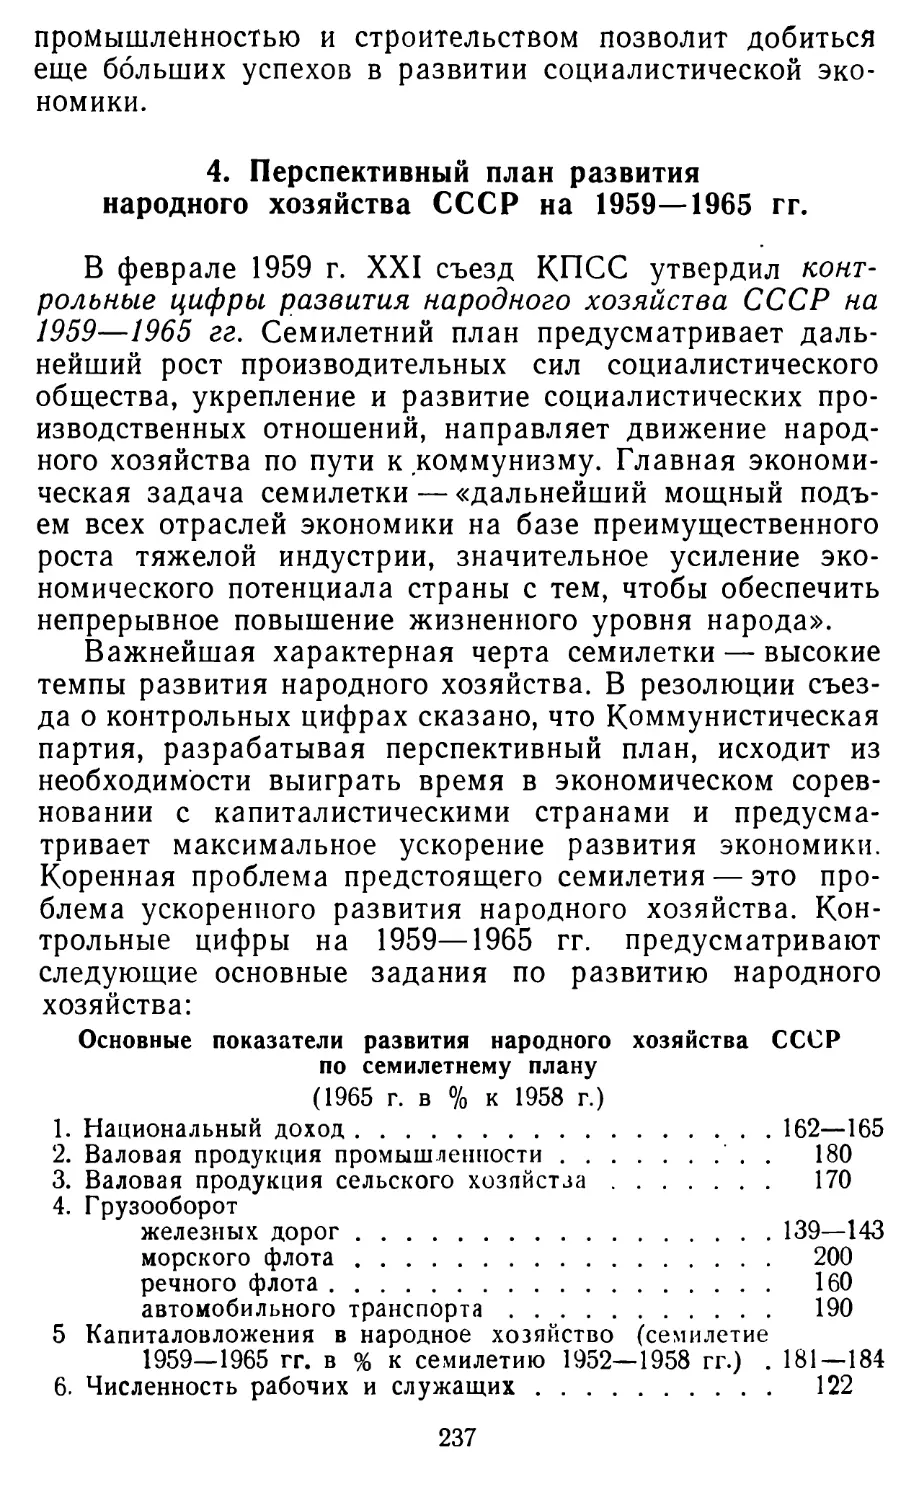 4. Перспективный план развития народного хозяйства СССР на 1959—1965 гг